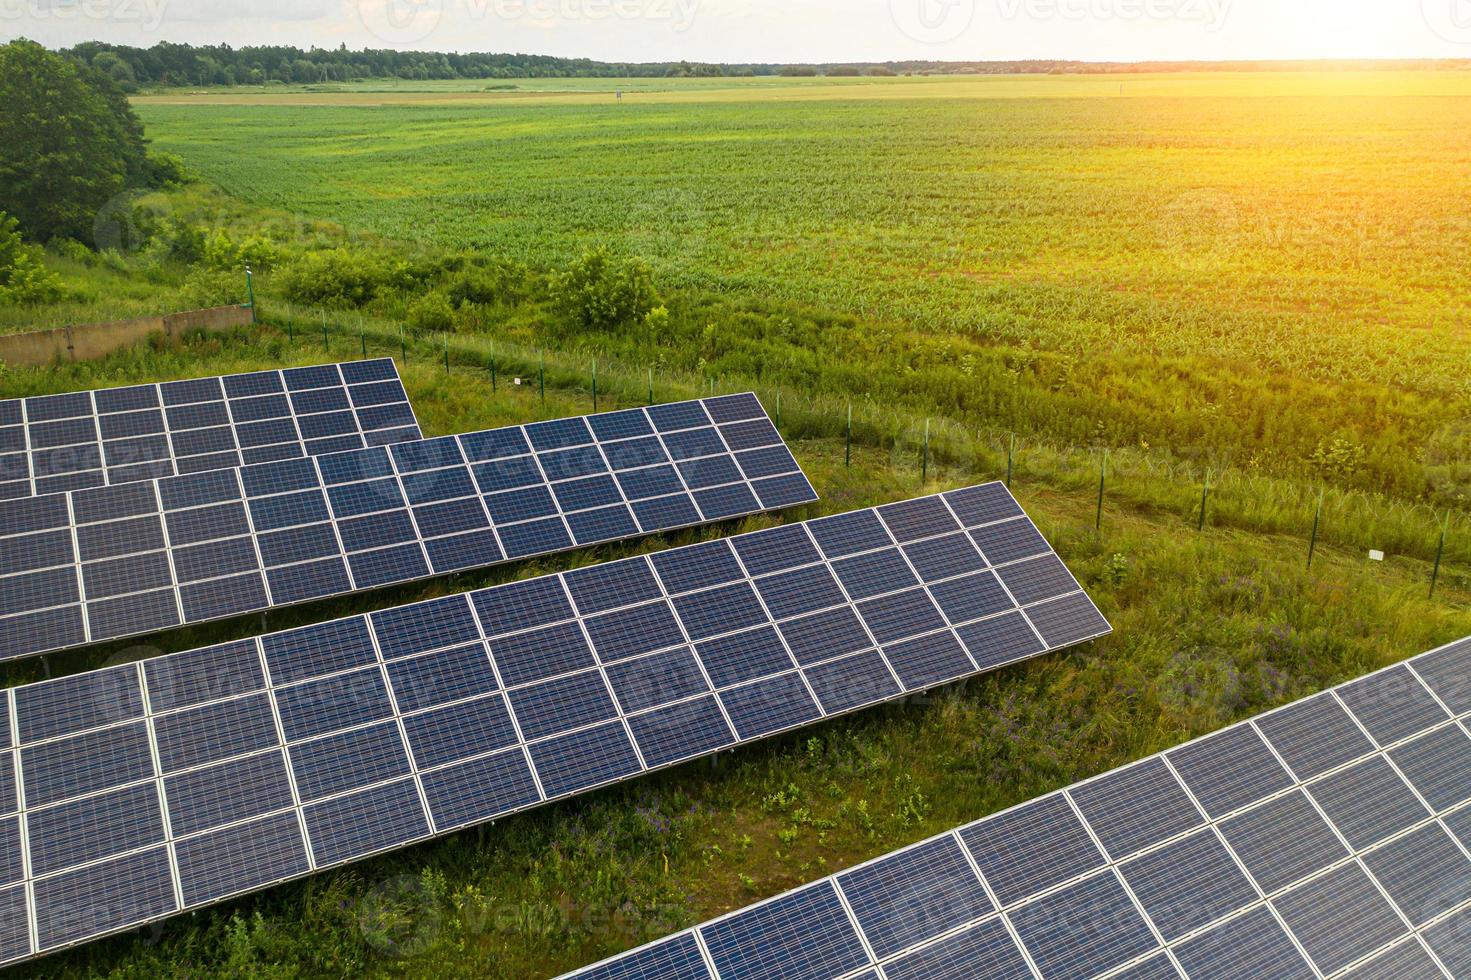 bovenaanzicht van zonne-installatie station. zonnekracht is grote energie om elektrisch te produceren. dit is schone stroom en goede zaken voor het milieu. zonne-energiesysteem is een belangrijke bron van hernieuwbare energie foto